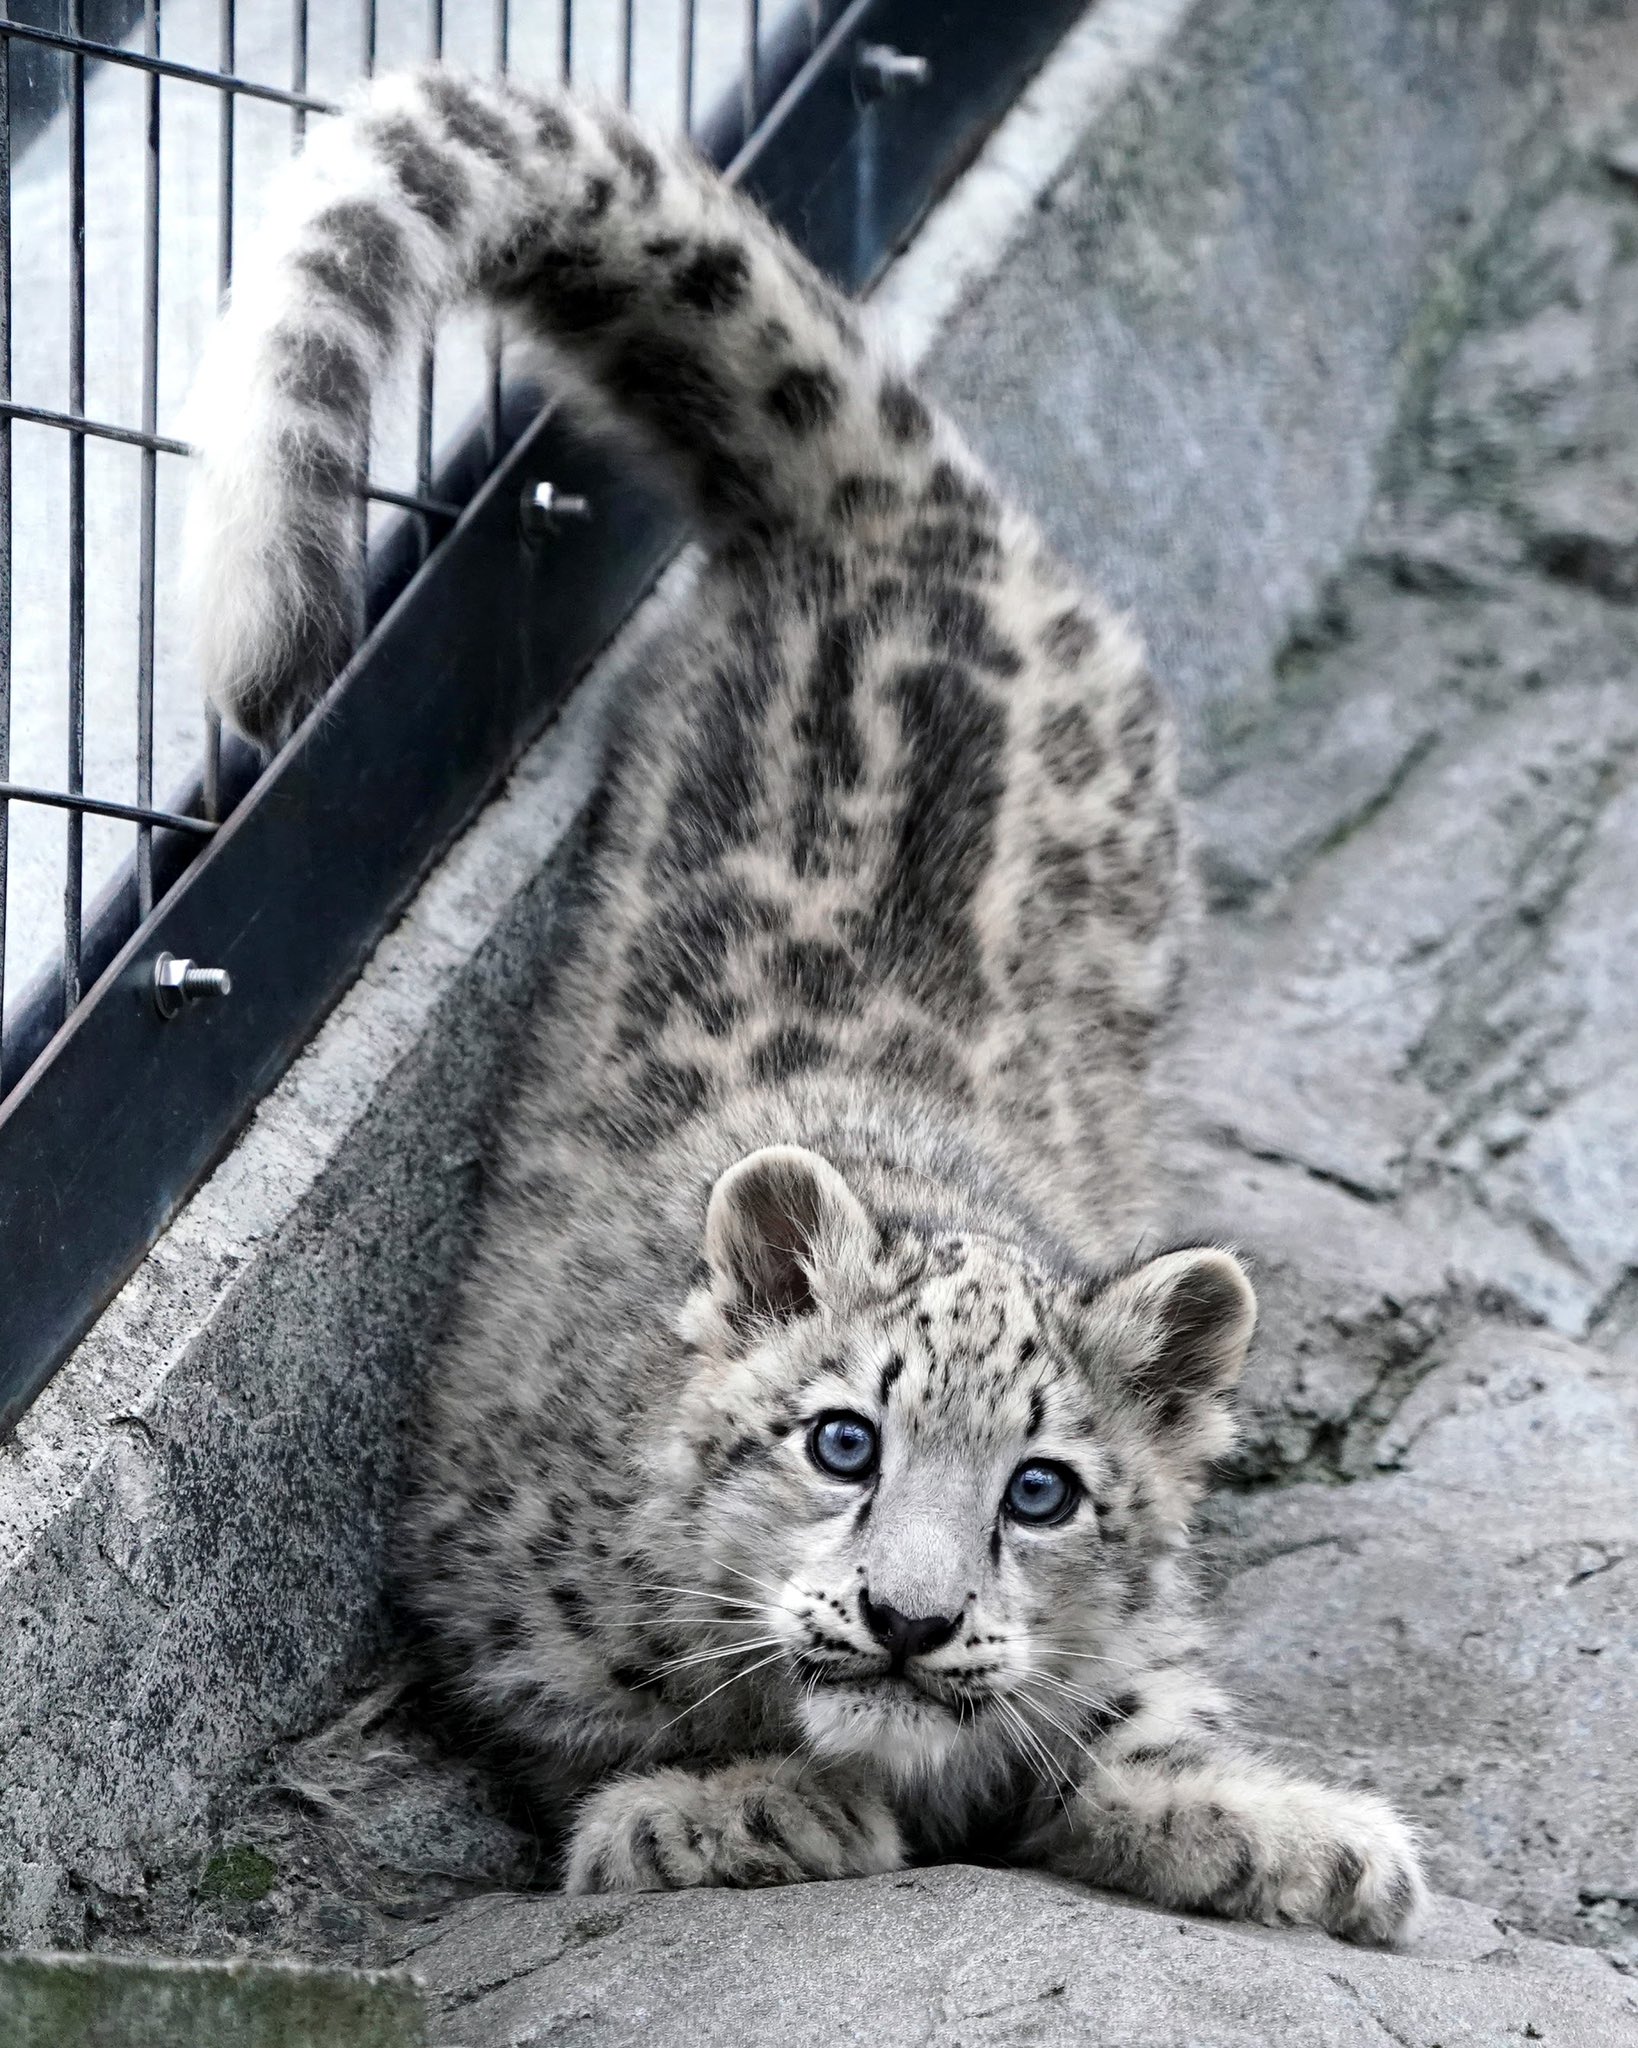 Riku Sur Twitter 旭山動物園のユキヒョウの赤ちゃん 生息地で猫と間違えて飼ってしまった人がいましたが 理由がわかります ユキヒョウ 旭山動物園